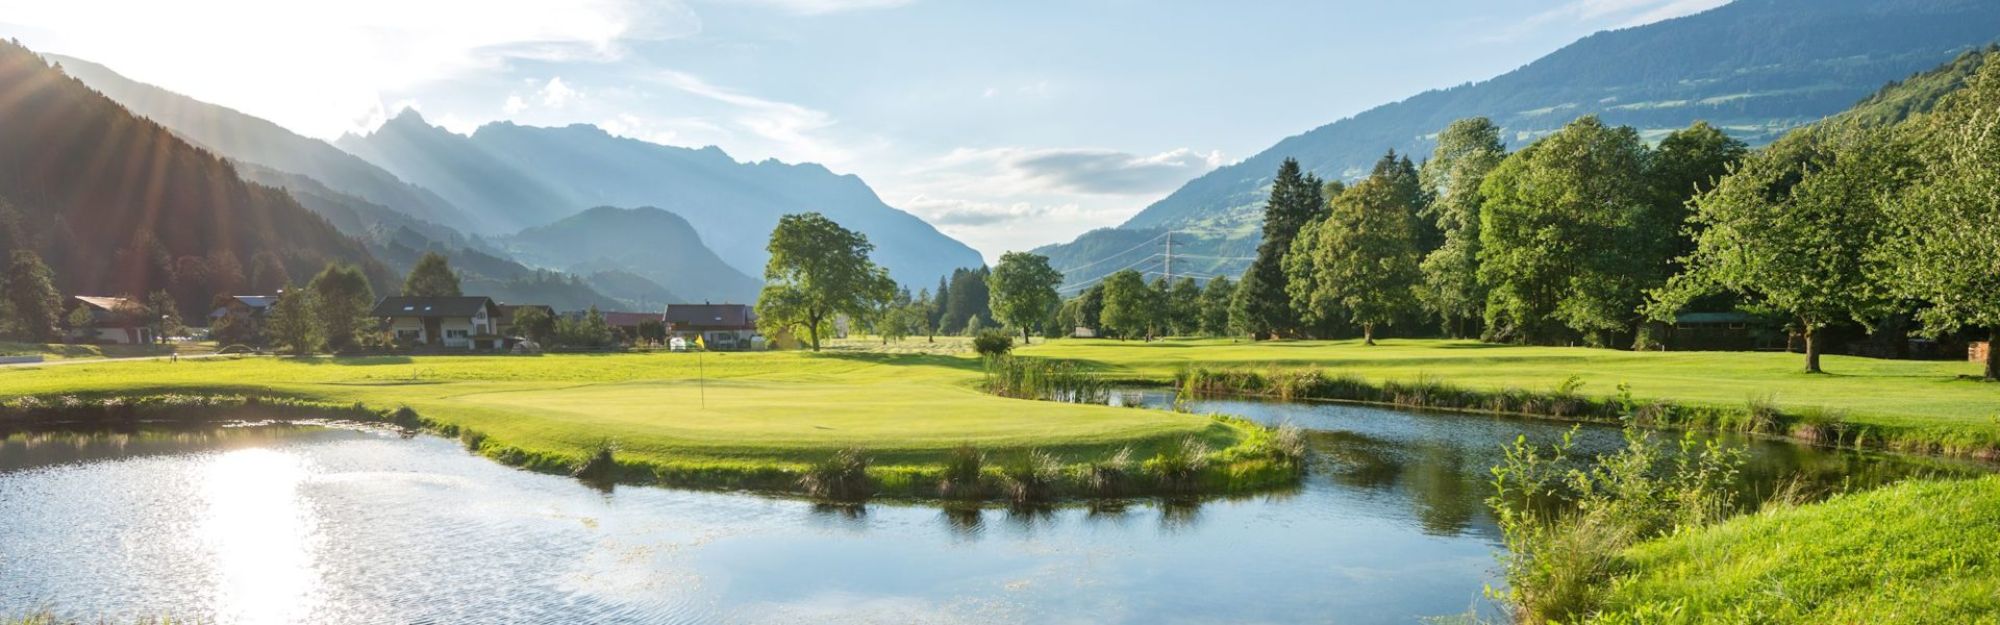 Giocare a golf nello stato del Vorarlberg